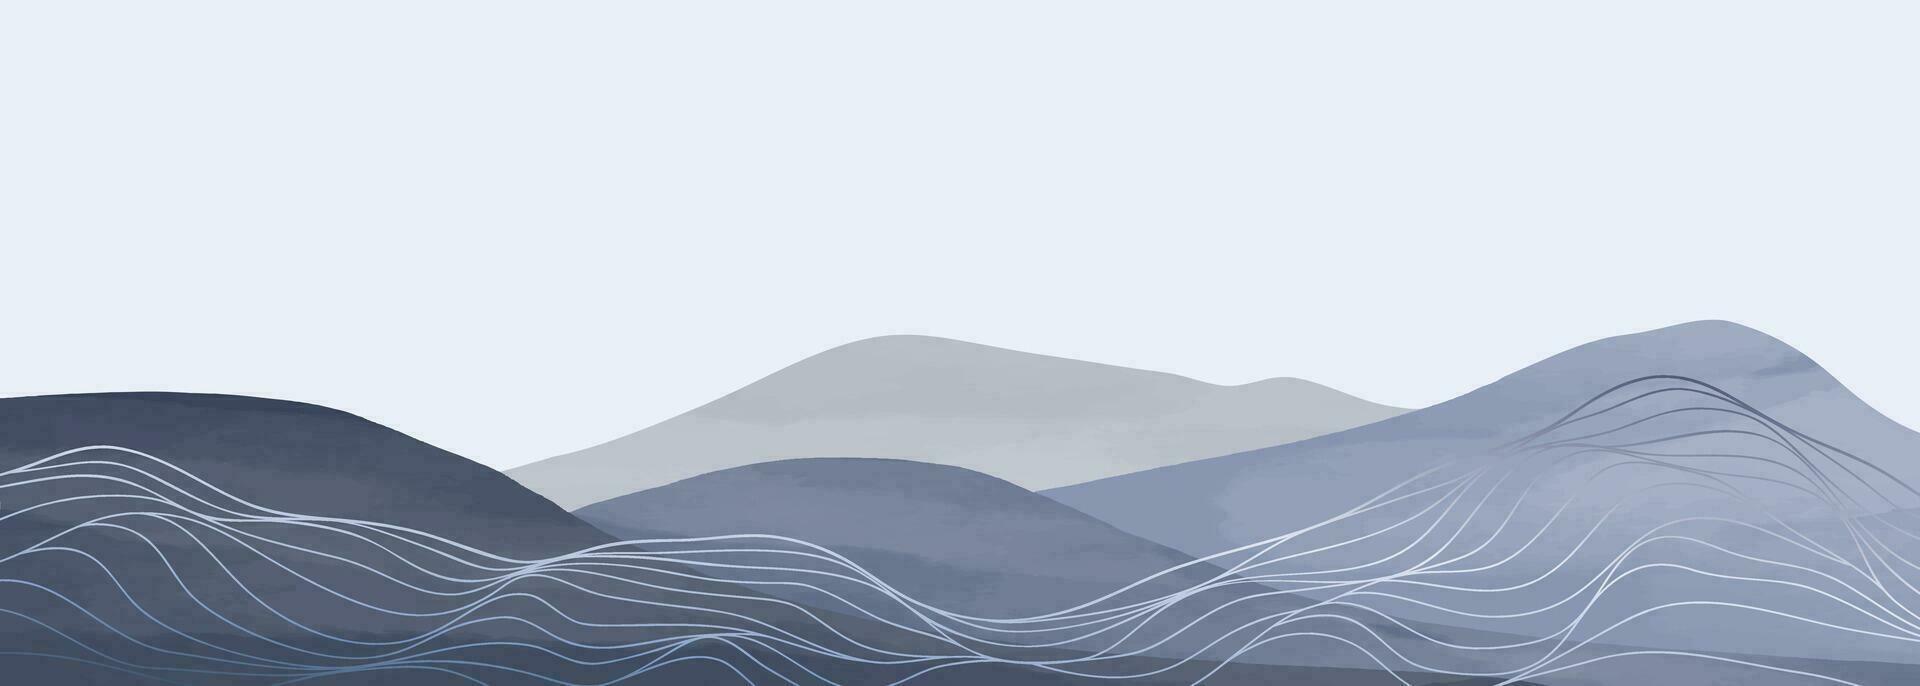 berg landskap vattenfärg målning illustration med linje konst mönster. abstrakt samtida estetisk bakgrunder landskap. berg, kullar och horisont vektor